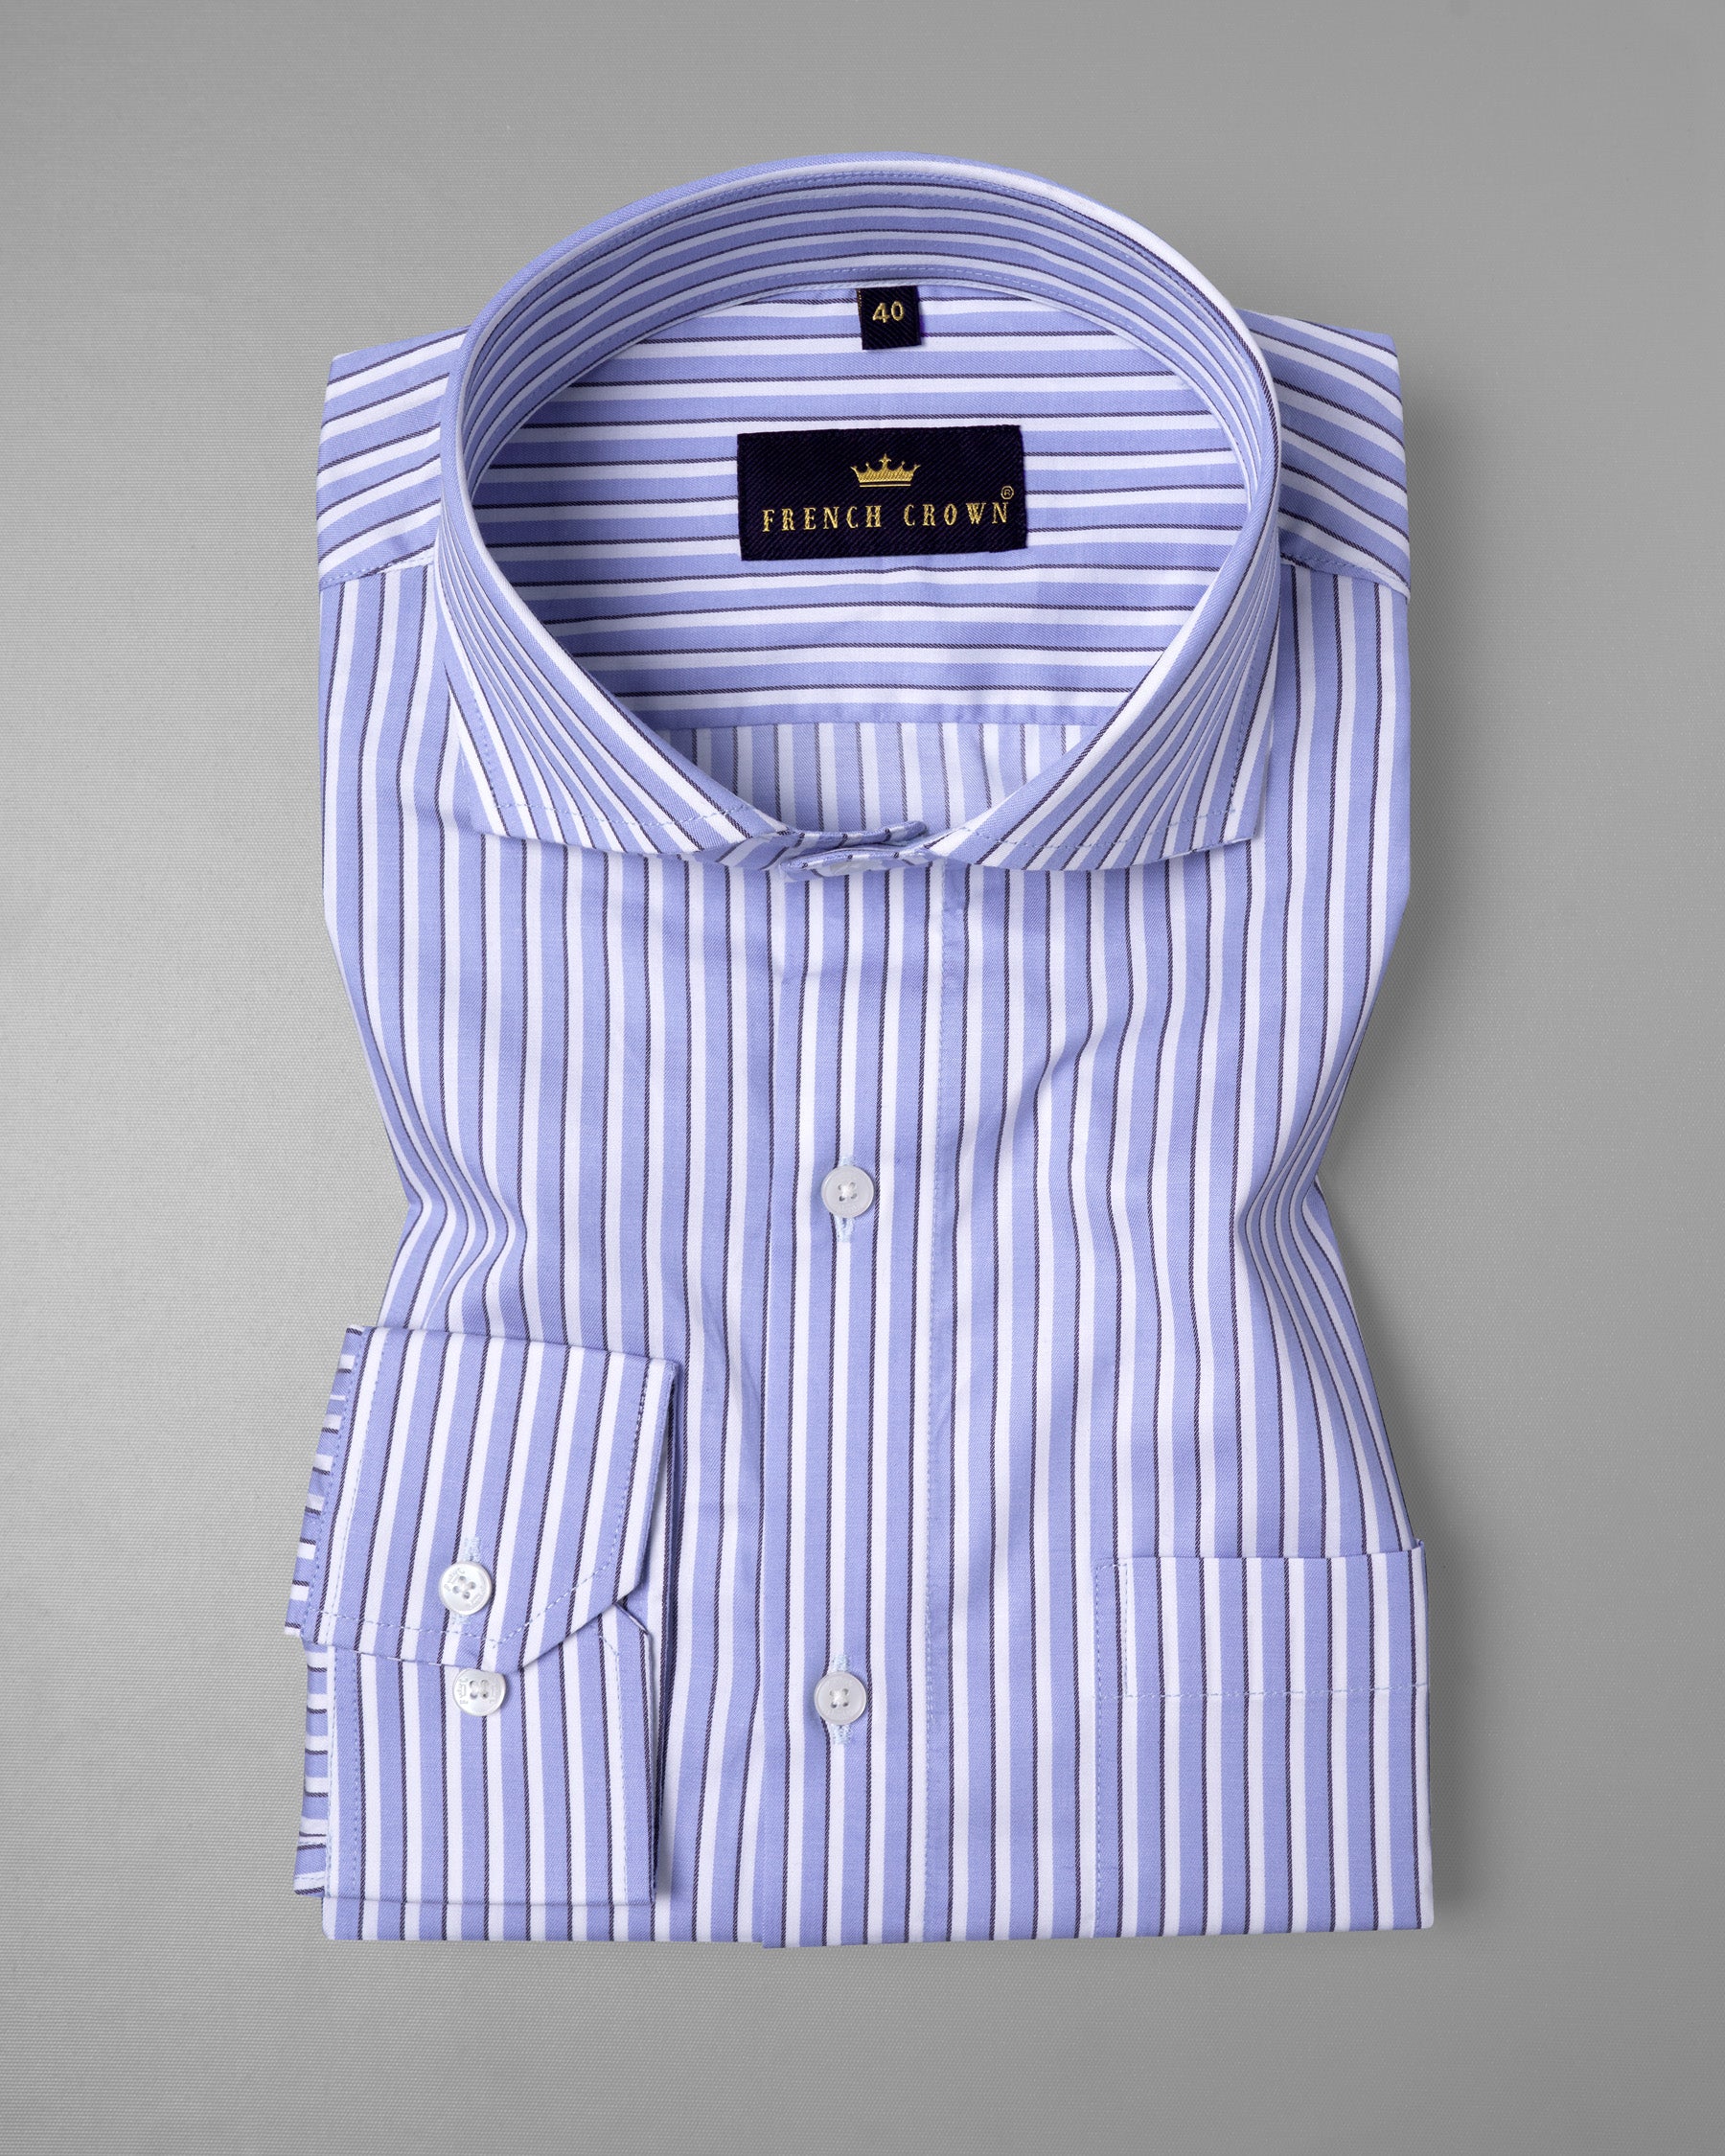 Sky Blue Striped Premium Cotton shirt 5508-CA-38, 5508-CA-H-38, 5508-CA-39, 5508-CA-H-39, 5508-CA-40, 5508-CA-H-40, 5508-CA-42, 5508-CA-H-42, 5508-CA-44, 5508-CA-H-44, 5508-CA-46, 5508-CA-H-46, 5508-CA-48, 5508-CA-H-48, 5508-CA-50, 5508-CA-H-50, 5508-CA-52, 5508-CA-H-52